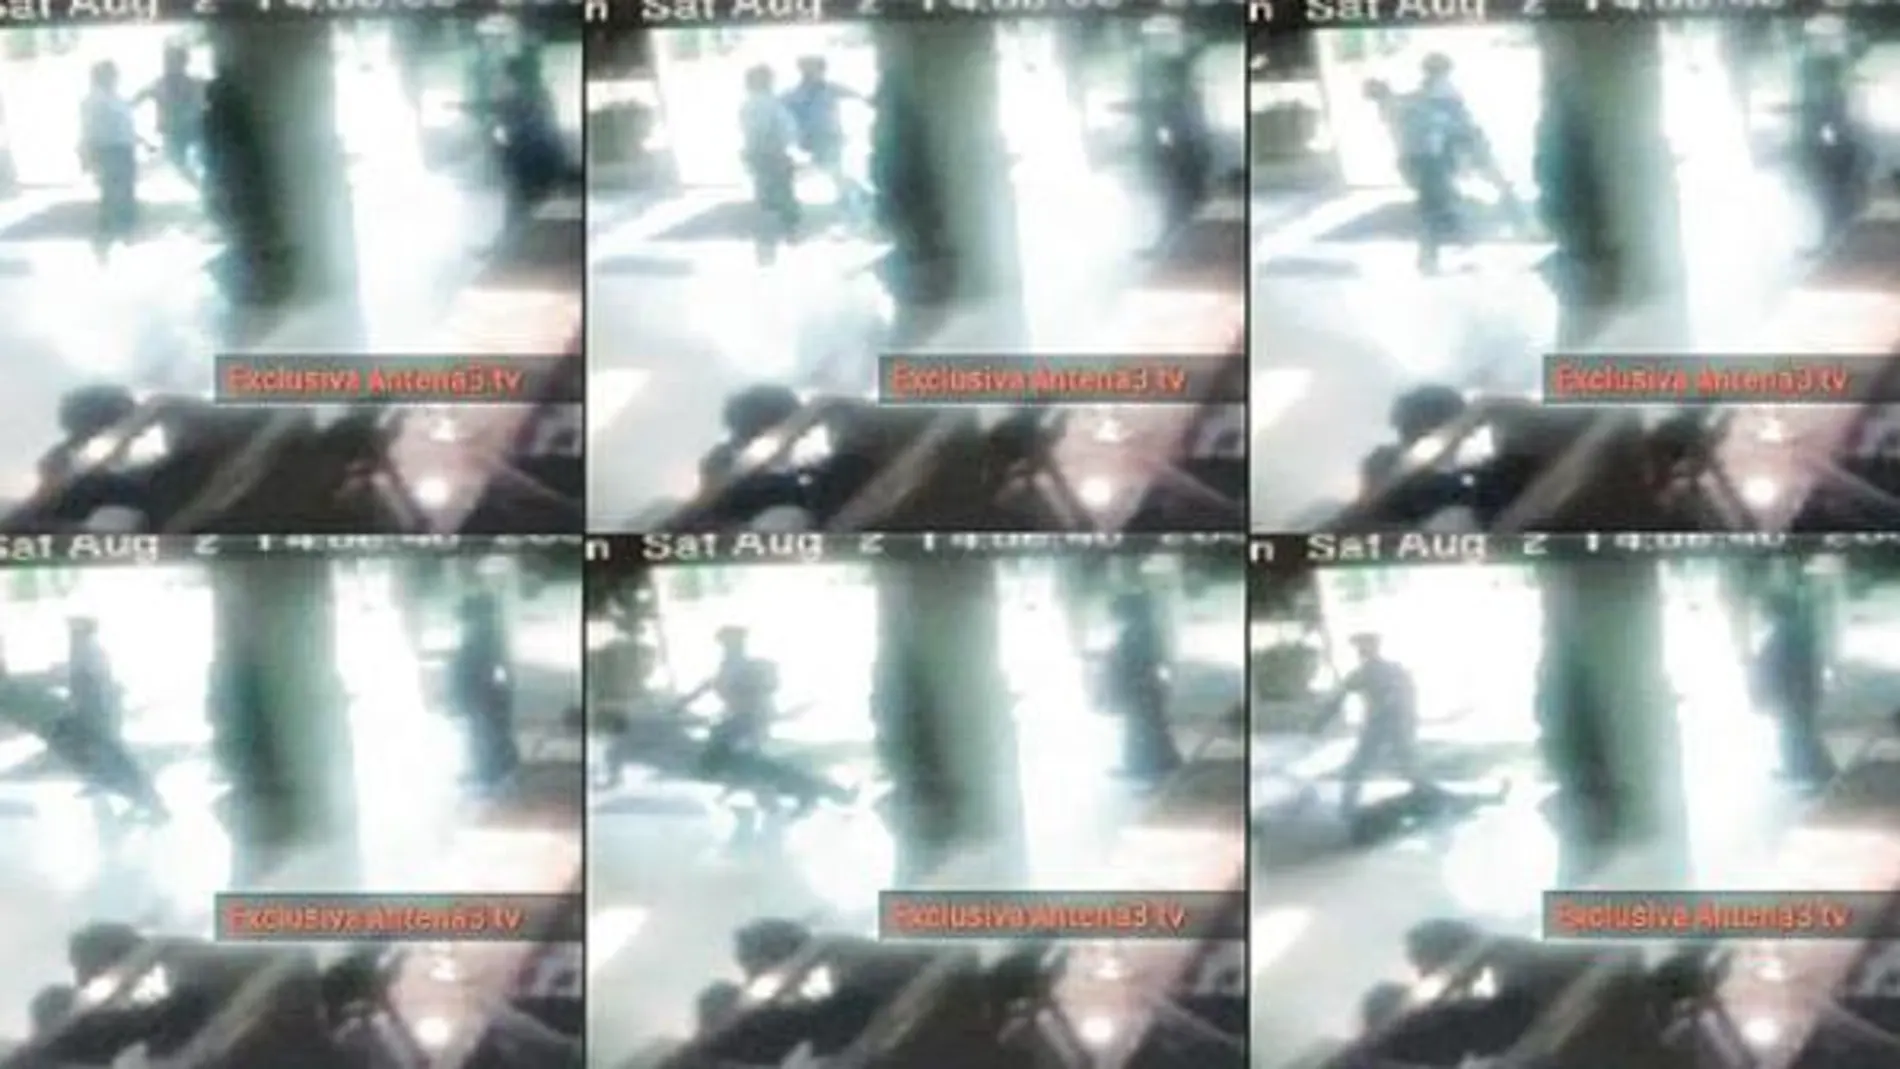 Las cámaras del hotel grabaron cómo el profesor Neira fue brutalmente golpeado por Antonio Puerta aún cuando estaba tendido en el suelo